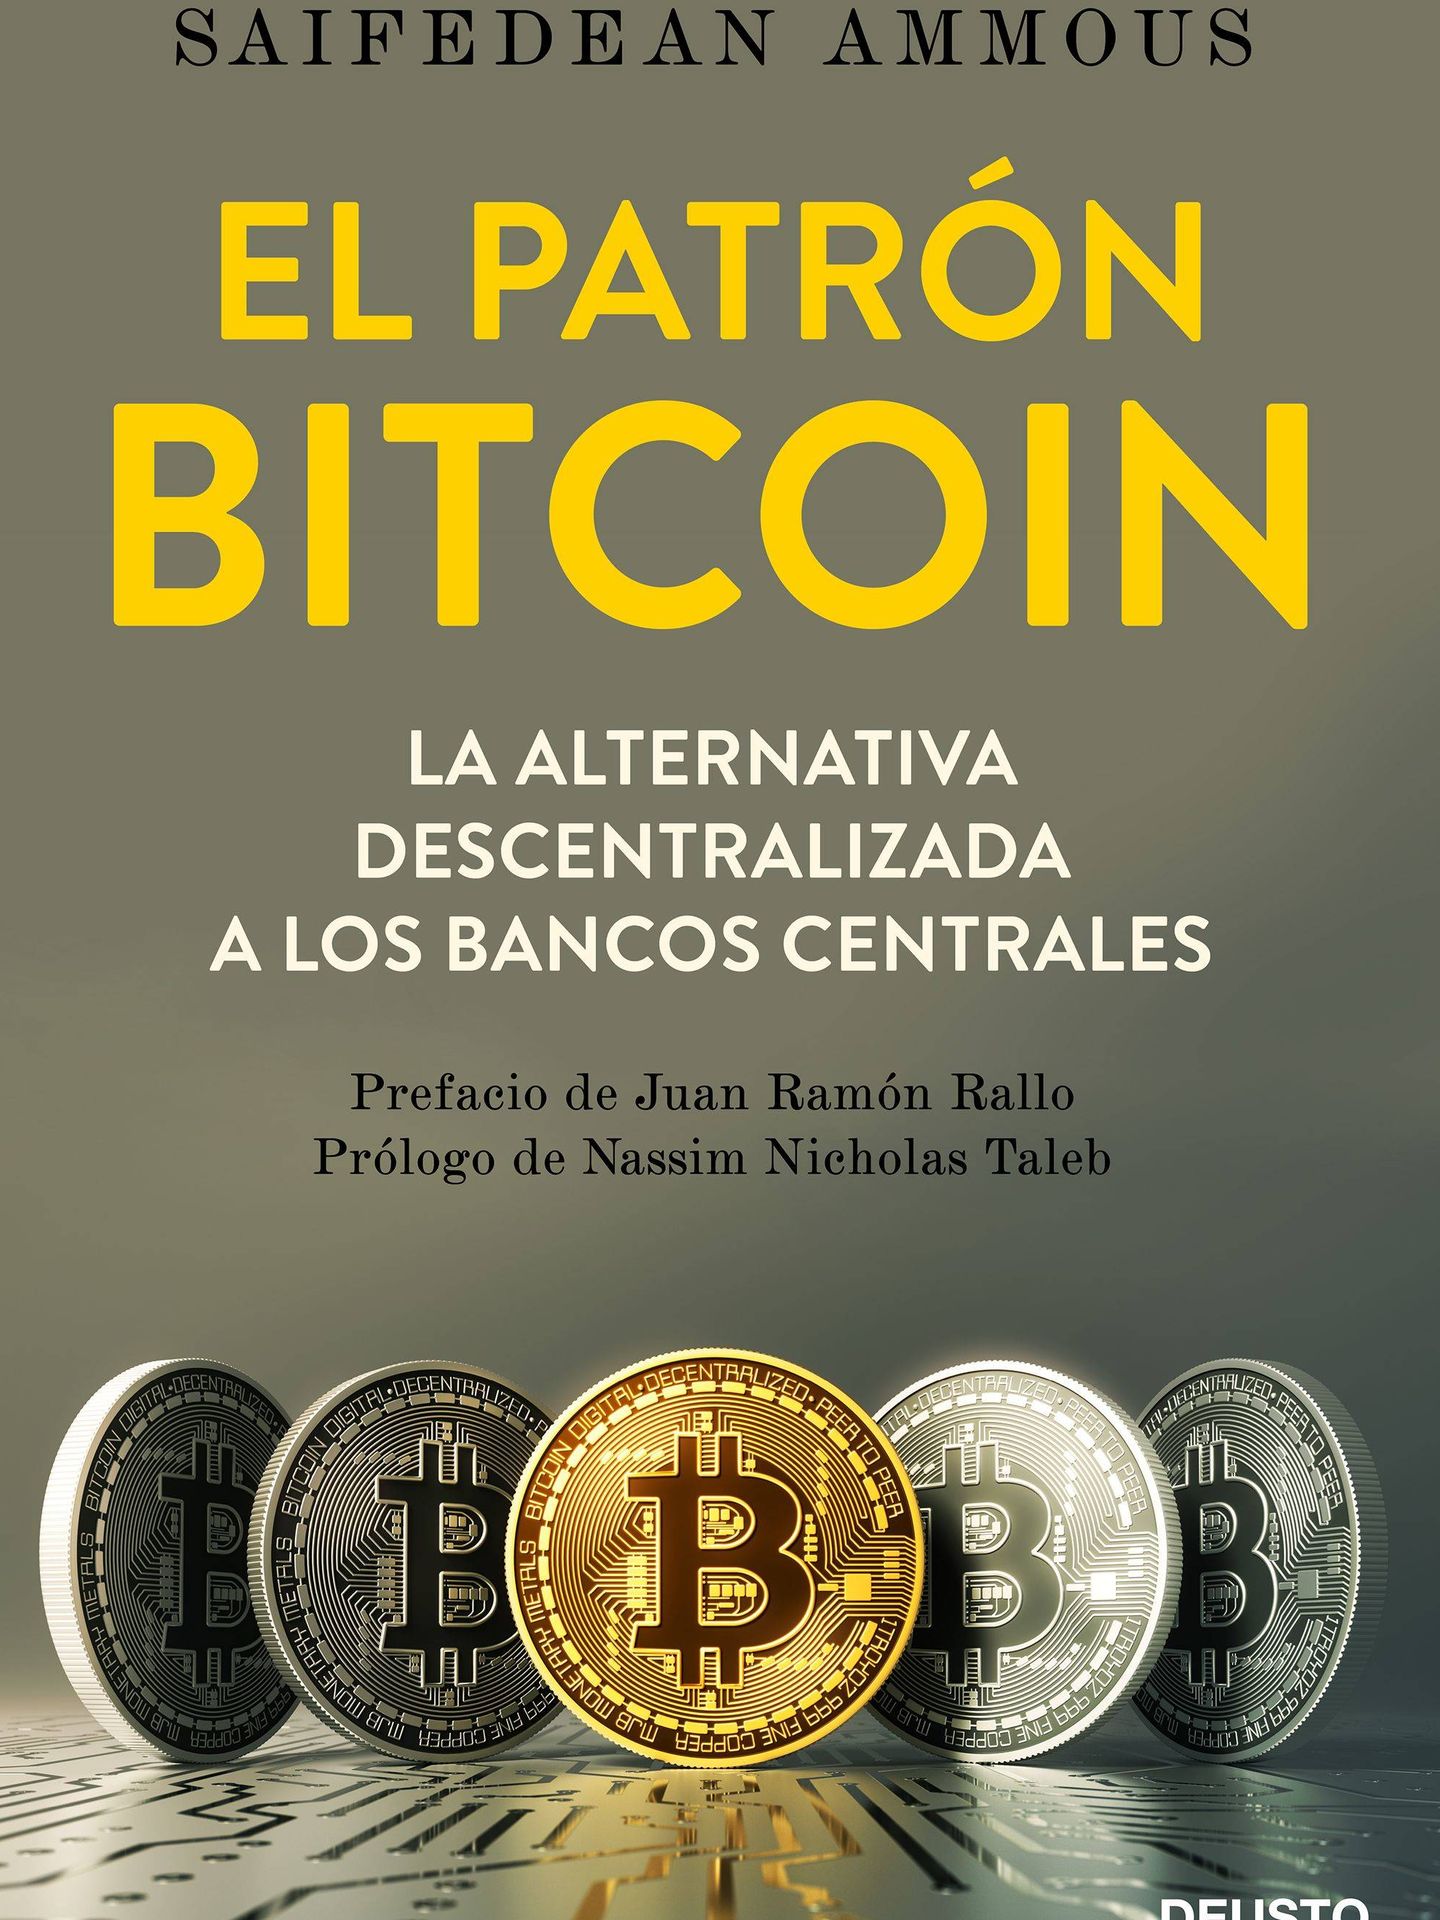 'El patrón bitcoin' (Deusto)